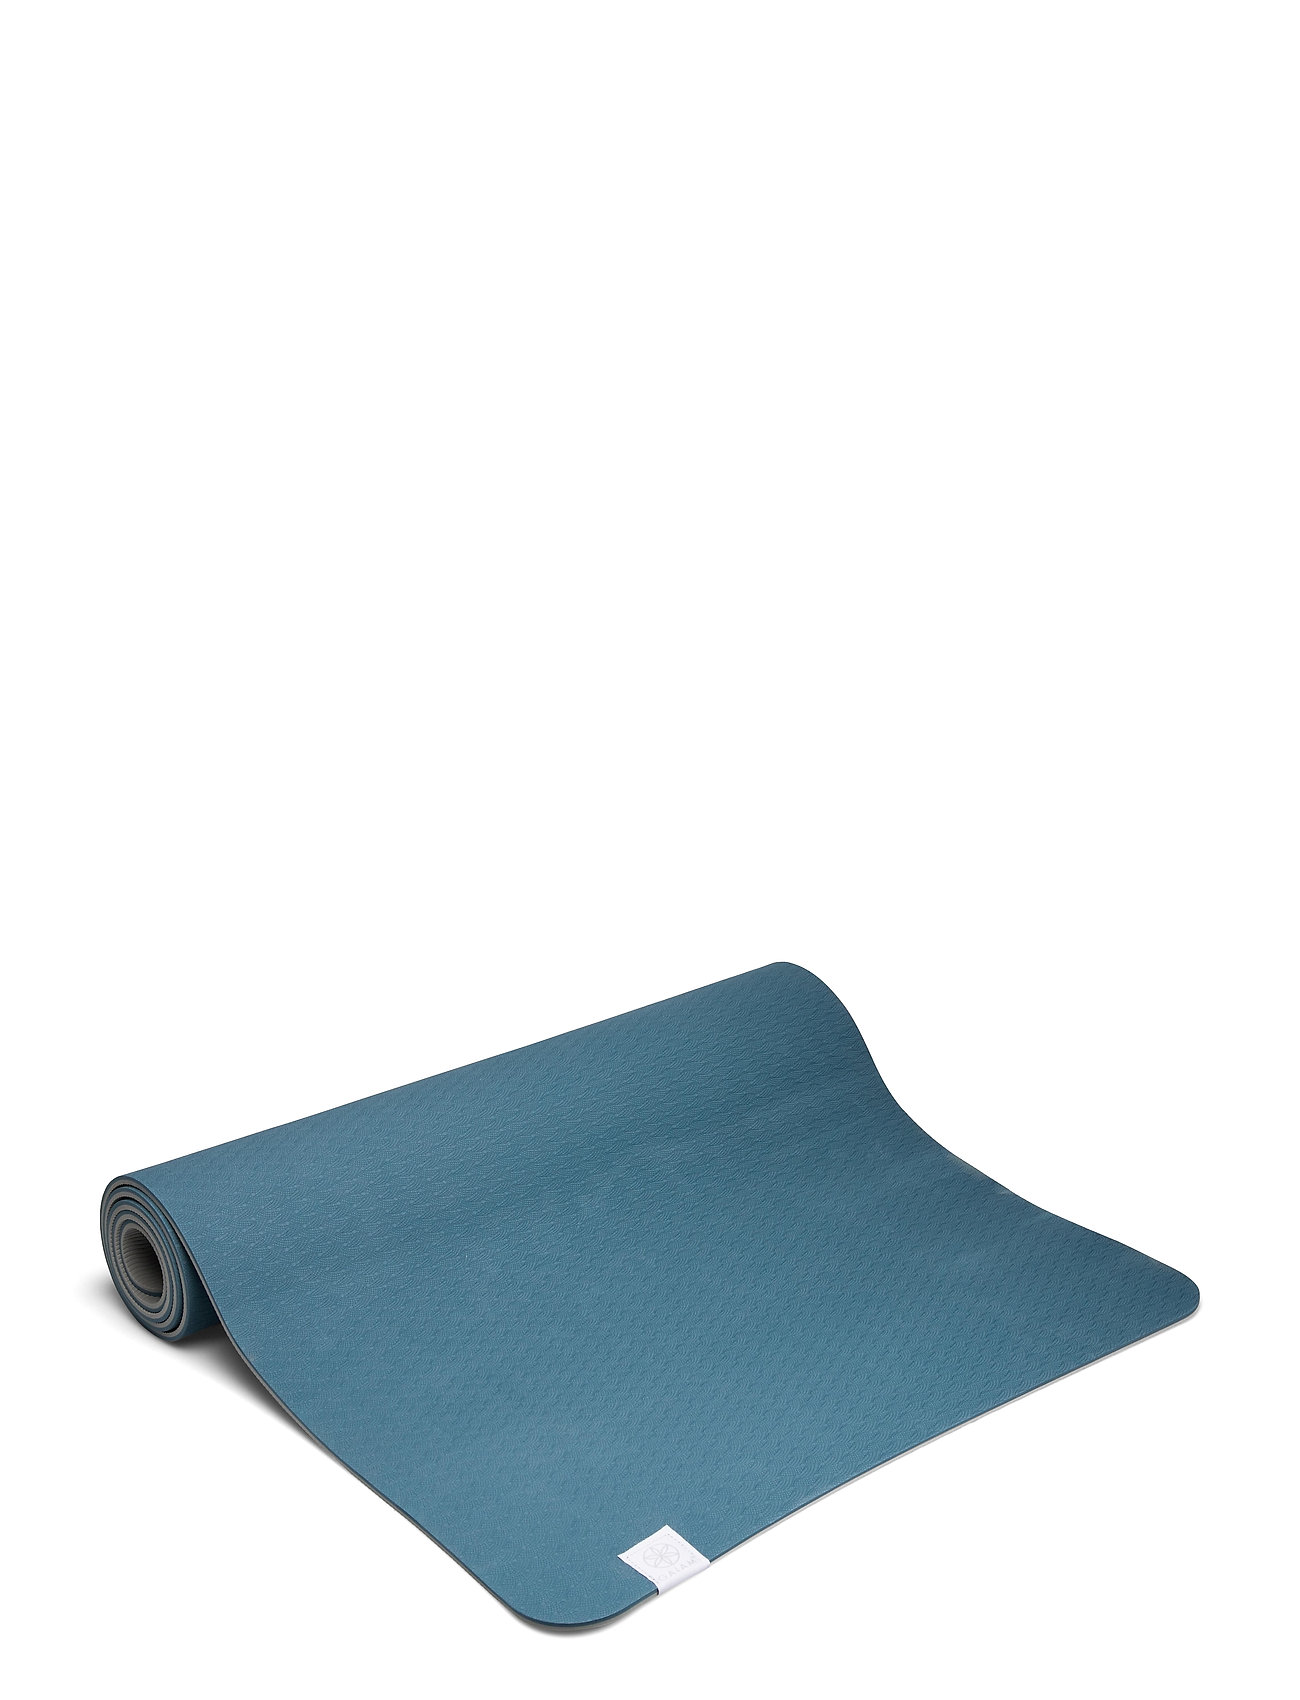 6mm Yoga Mat Tpe Lake Accessories Sports Equipment Yoga Equipment Yoga Mats And Accessories Sininen Gaiam